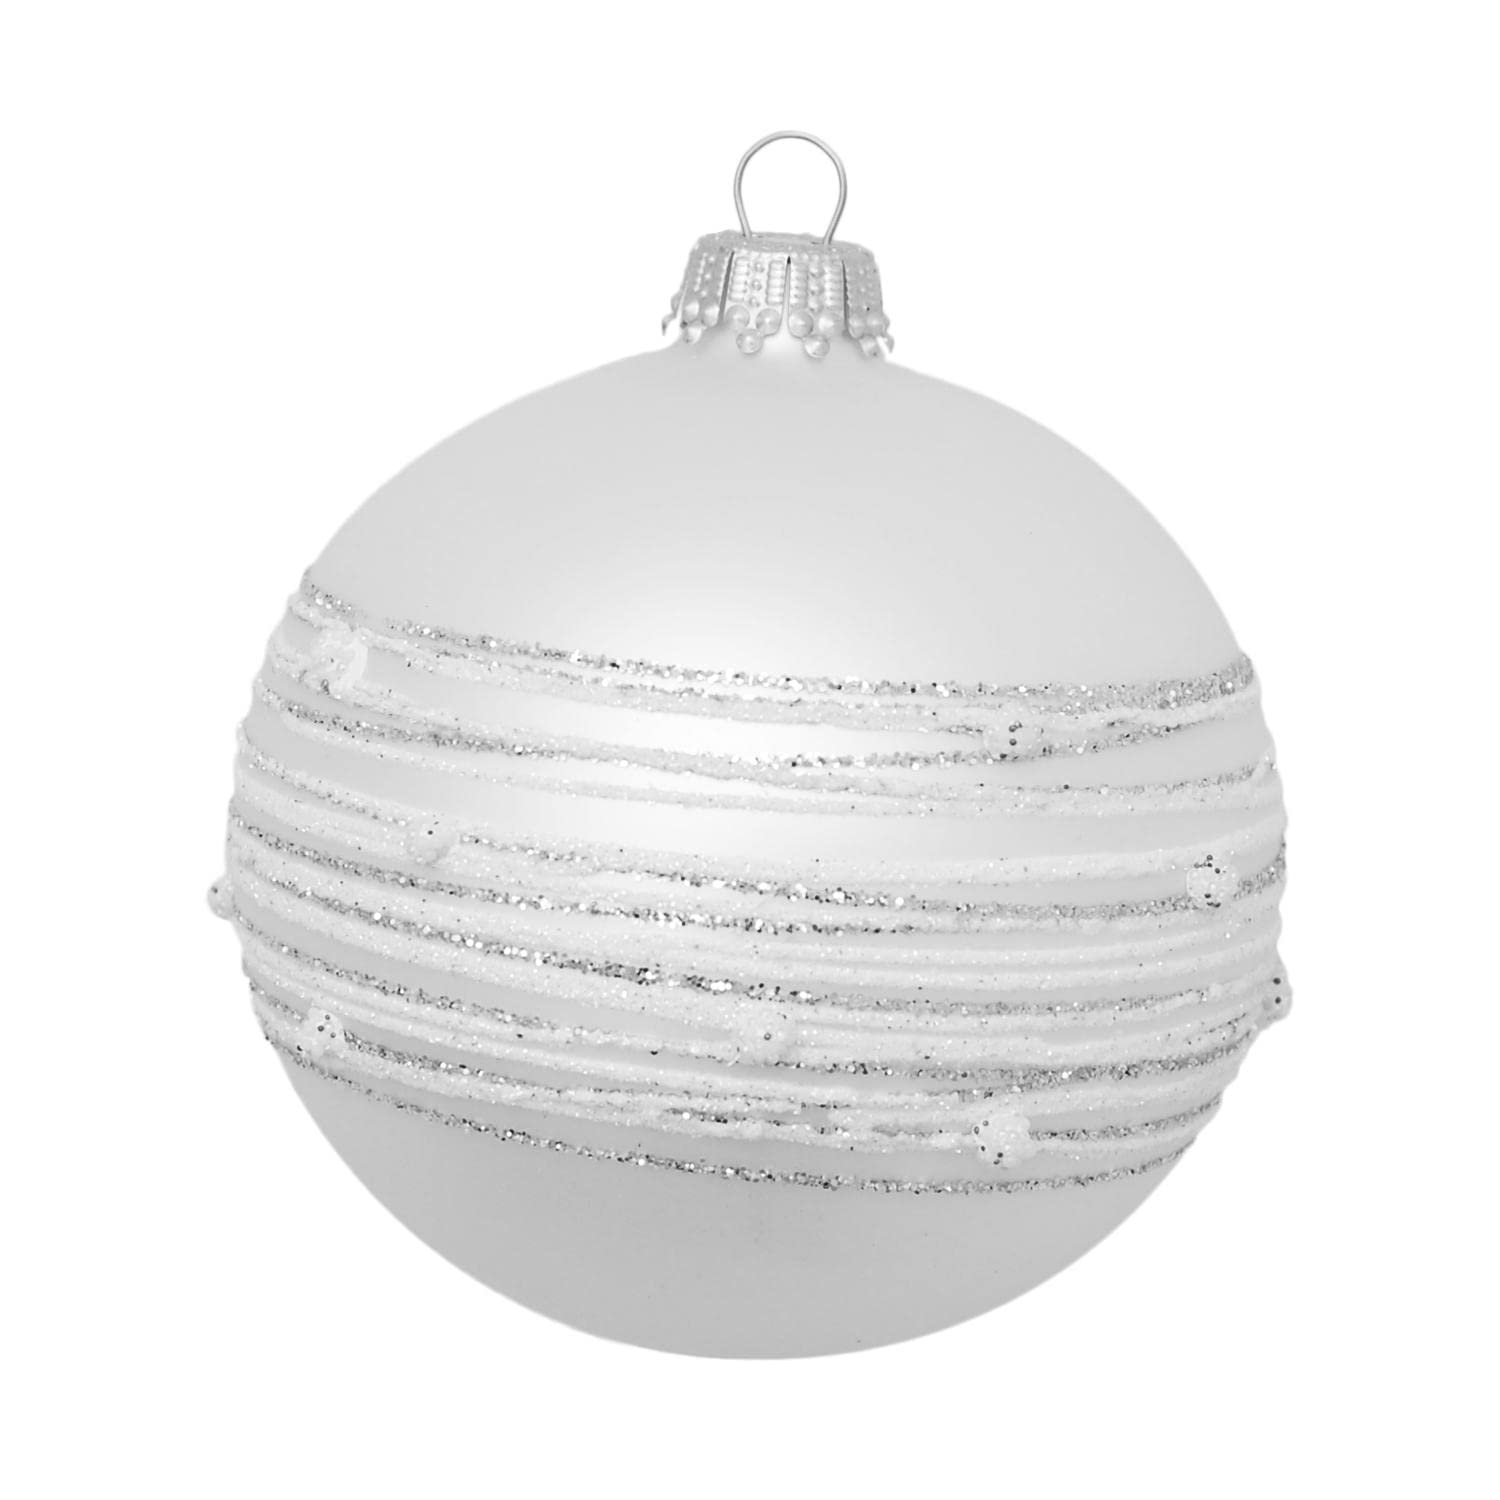 Krebs Glas Lauscha - Weihnachtsdekoration/Christbaumschmuck aus Glas - Weihnachtskugeln - Motiv: Silber-matt mit Streifen und Punkten - Größe: 6 mal 8cm